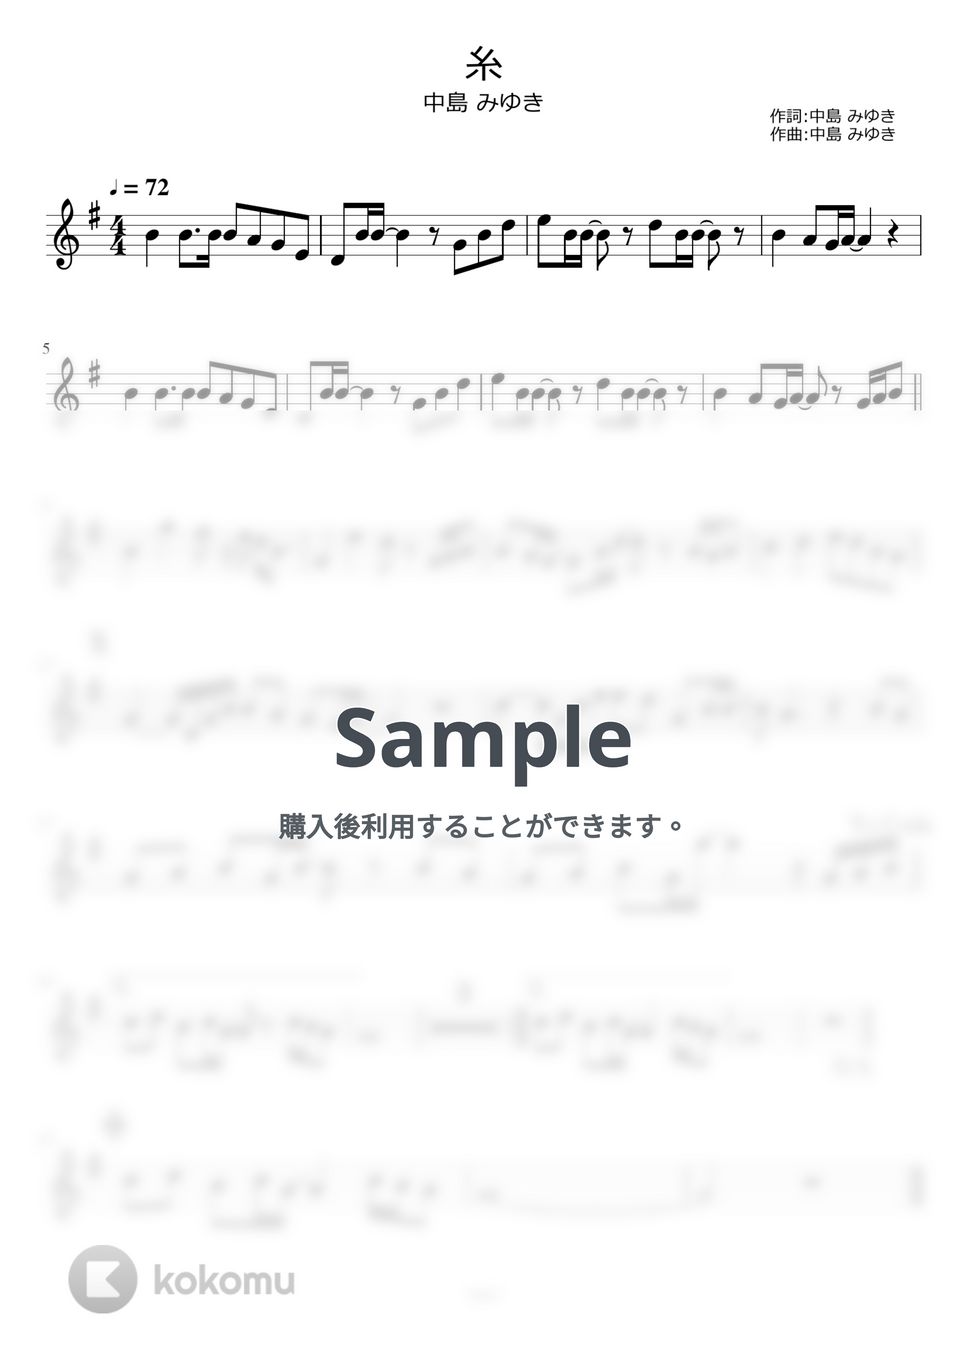 中島みゆき - 糸 by ayako music school